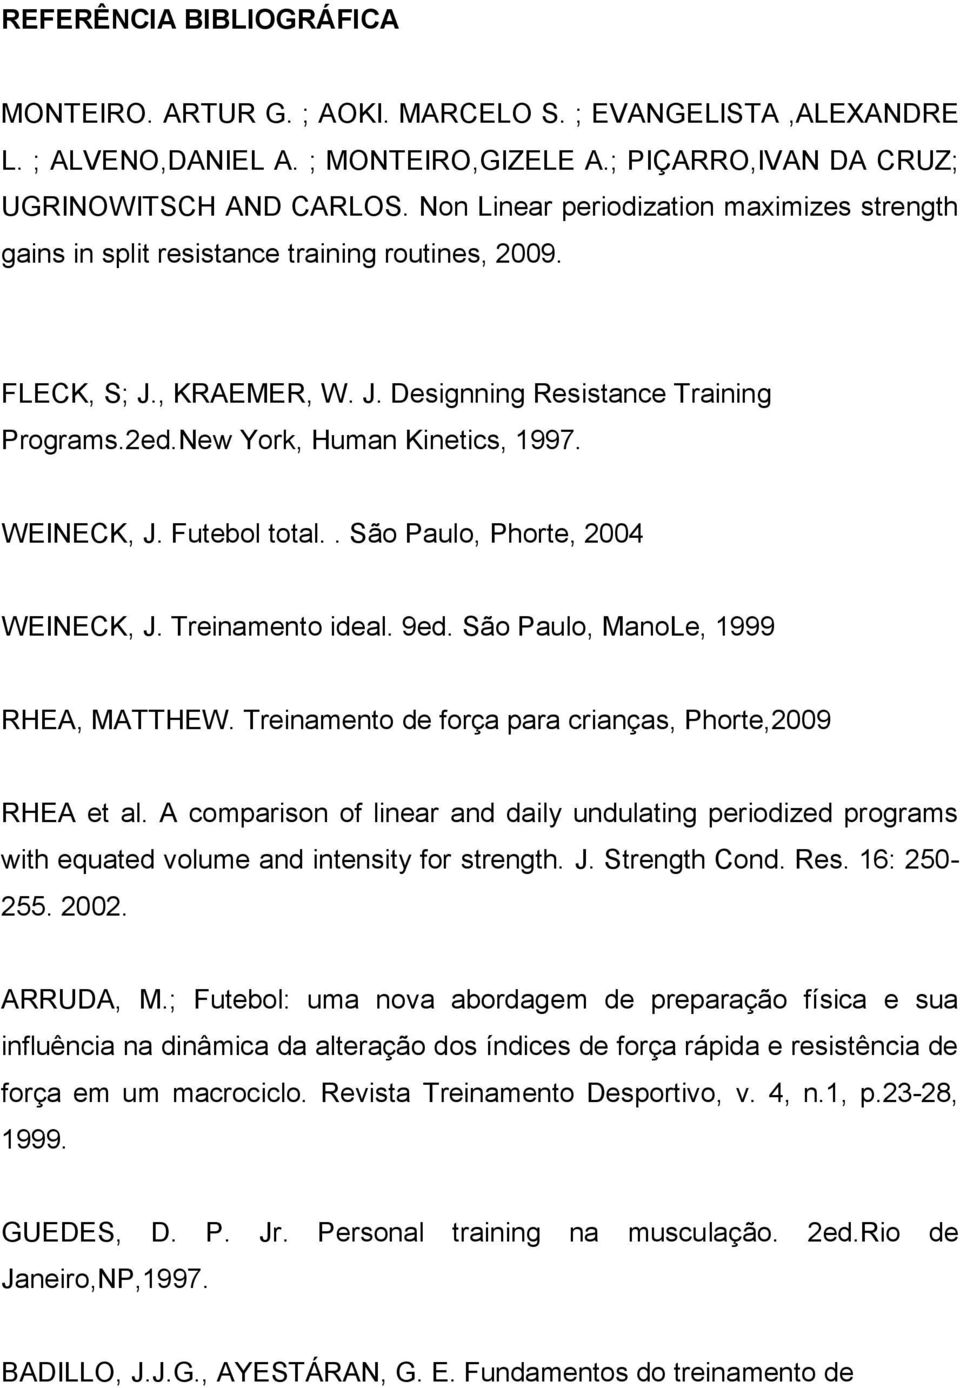 WEINECK, J. Futebol total.. São Paulo, Phorte, 2004 WEINECK, J. Treinamento ideal. 9ed. São Paulo, ManoLe, 1999 RHEA, MATTHEW. Treinamento de força para crianças, Phorte,2009 RHEA et al.